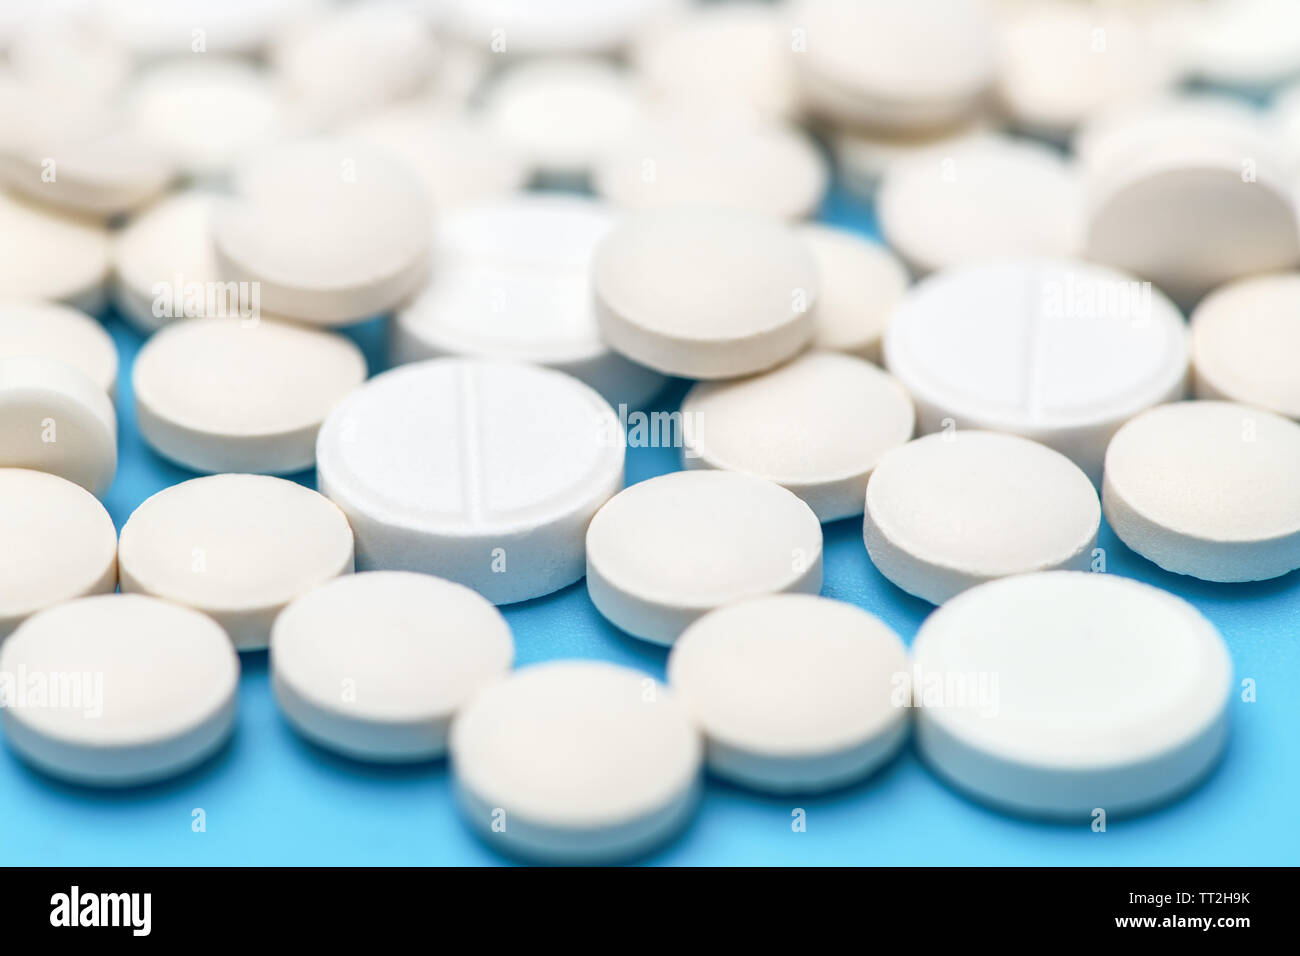 Macro photo of pills. Close-up of round white pills. Stock Photo